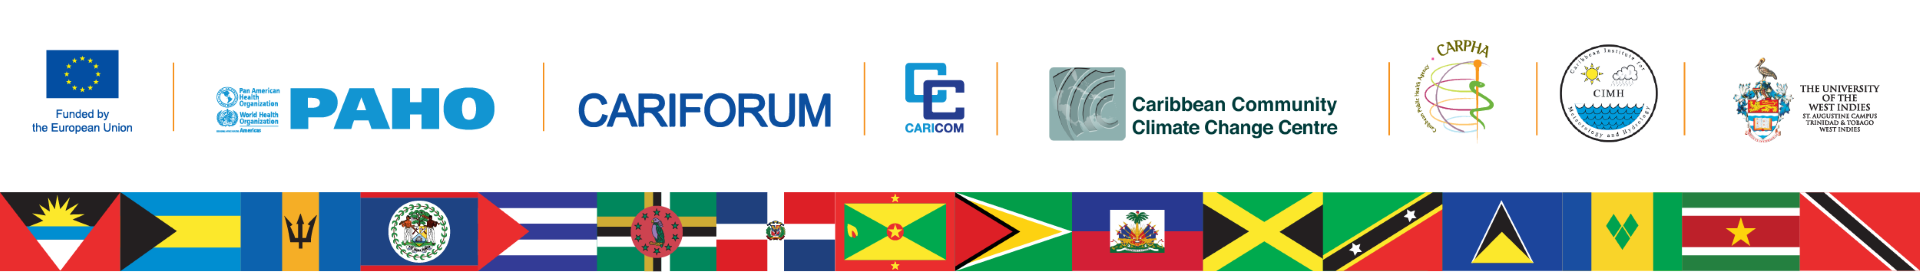 EU CARICOM Logos